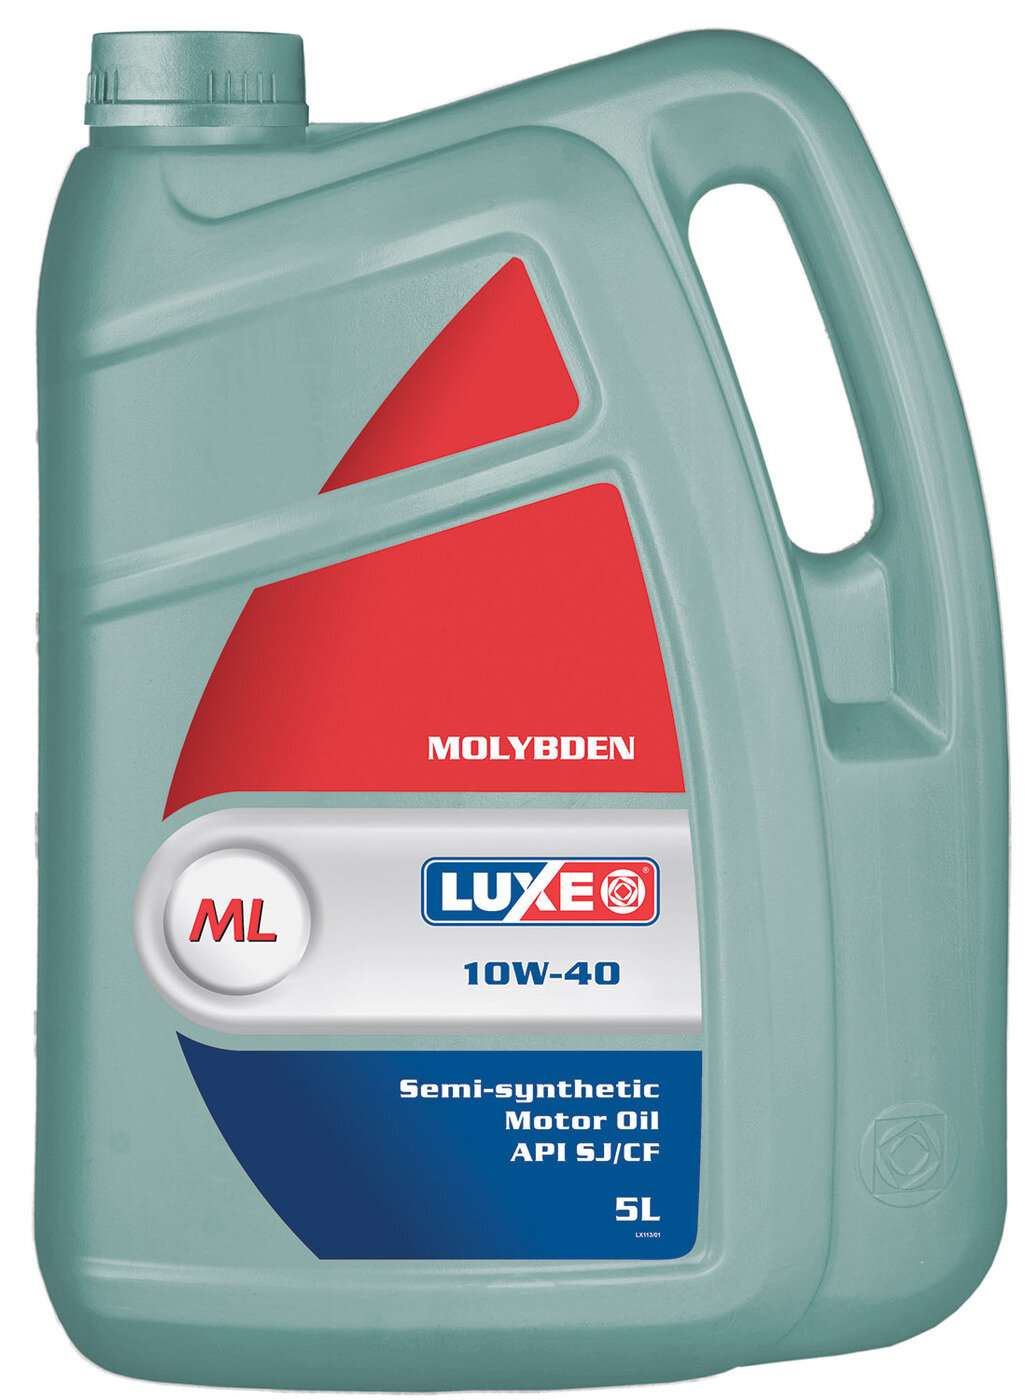 Моторное масло LUXE молибден (MOLYBDEN) 10W-40 SJ/CF полусинтетическое 5л